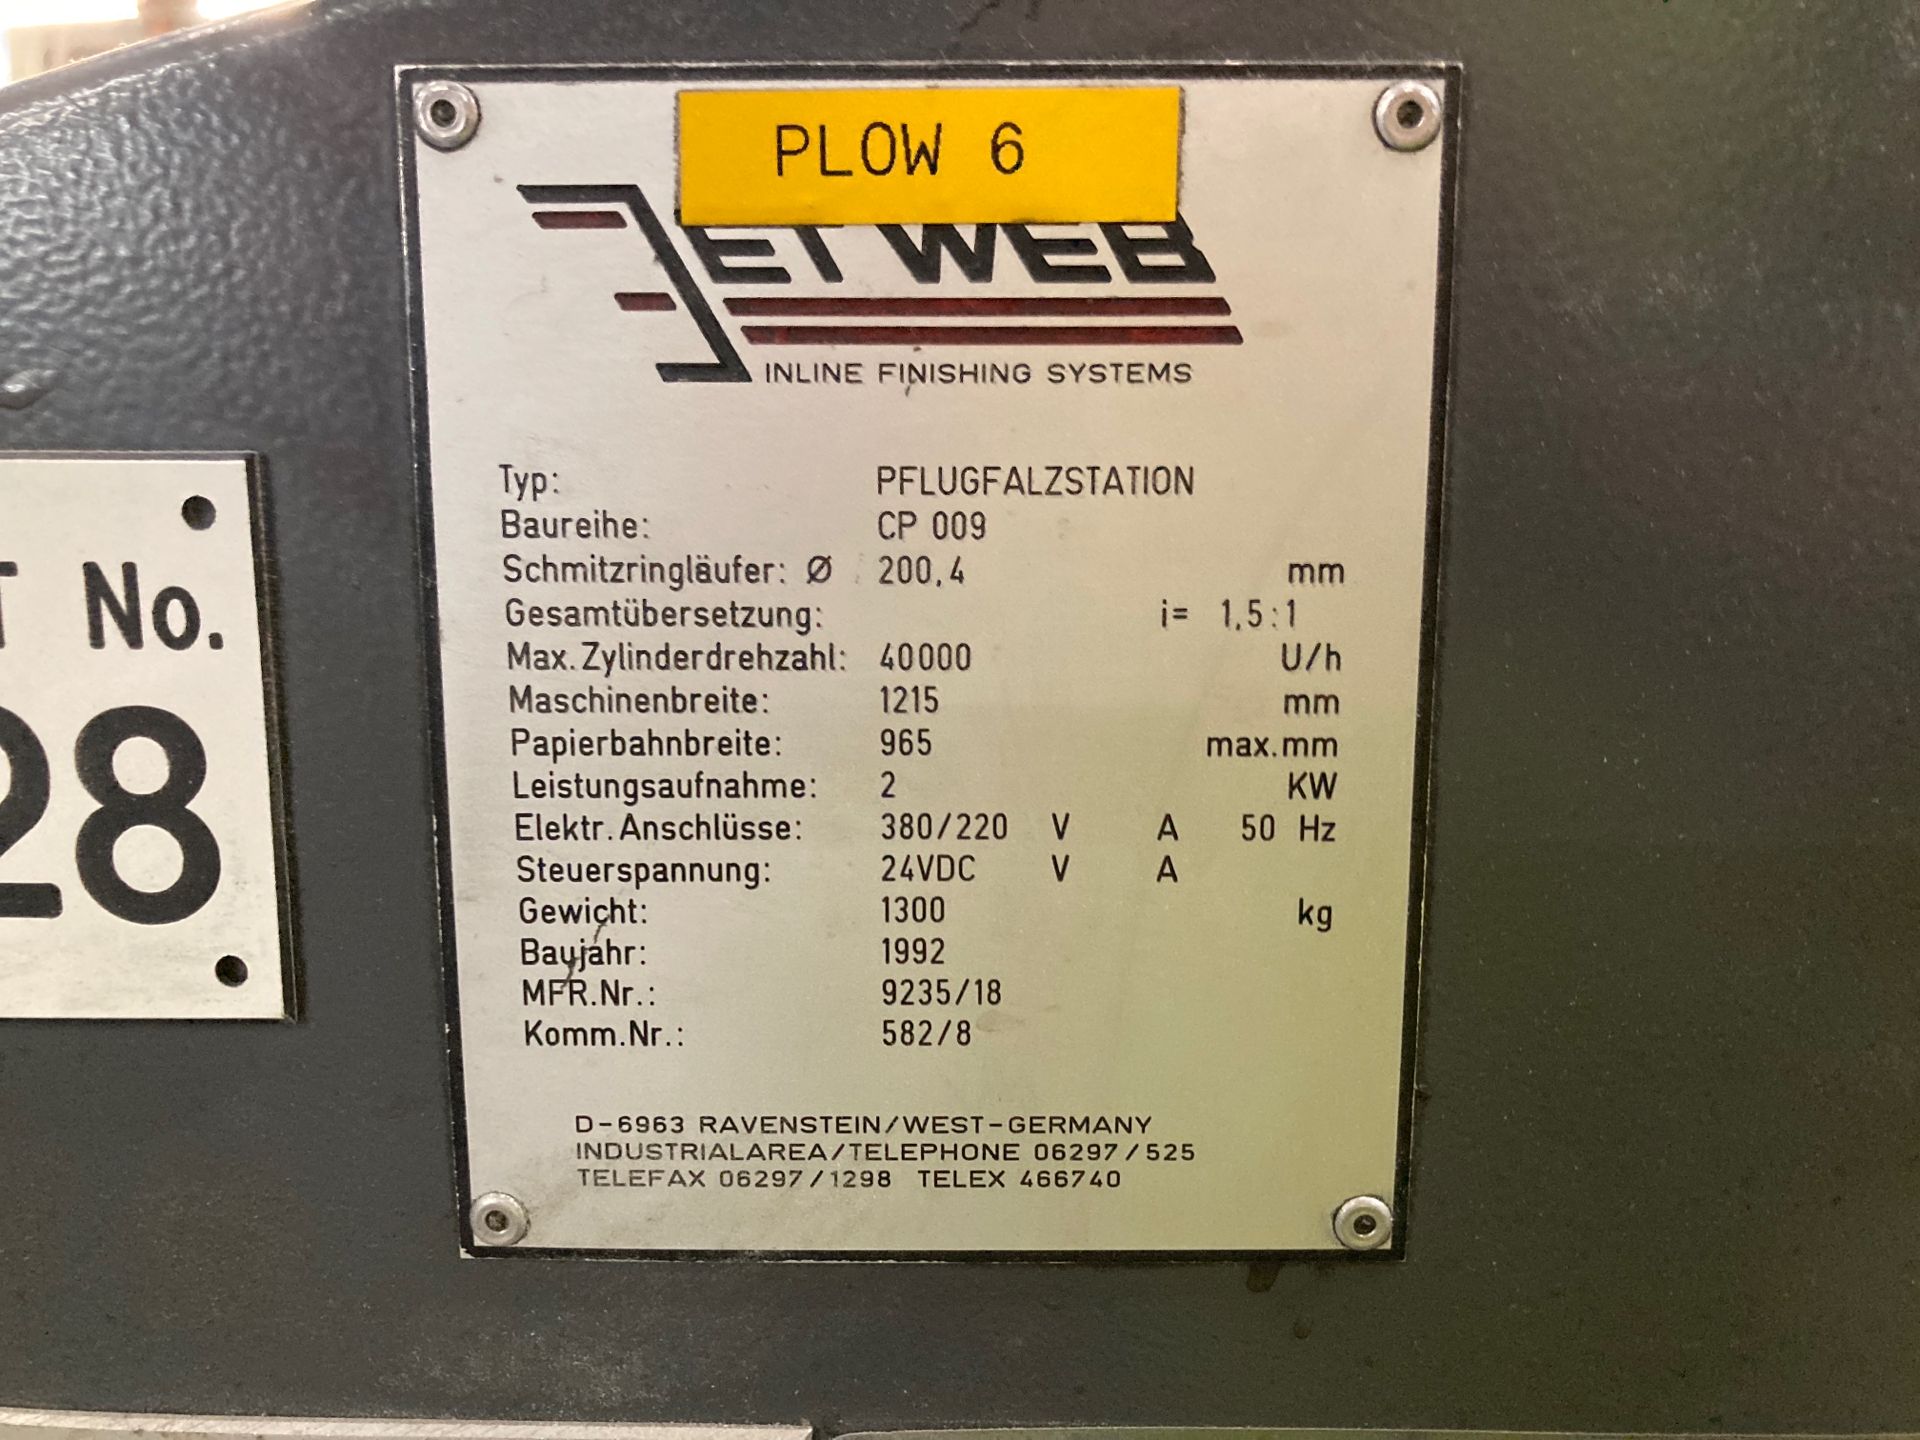 Jet Web Plow Machine - Bild 5 aus 5